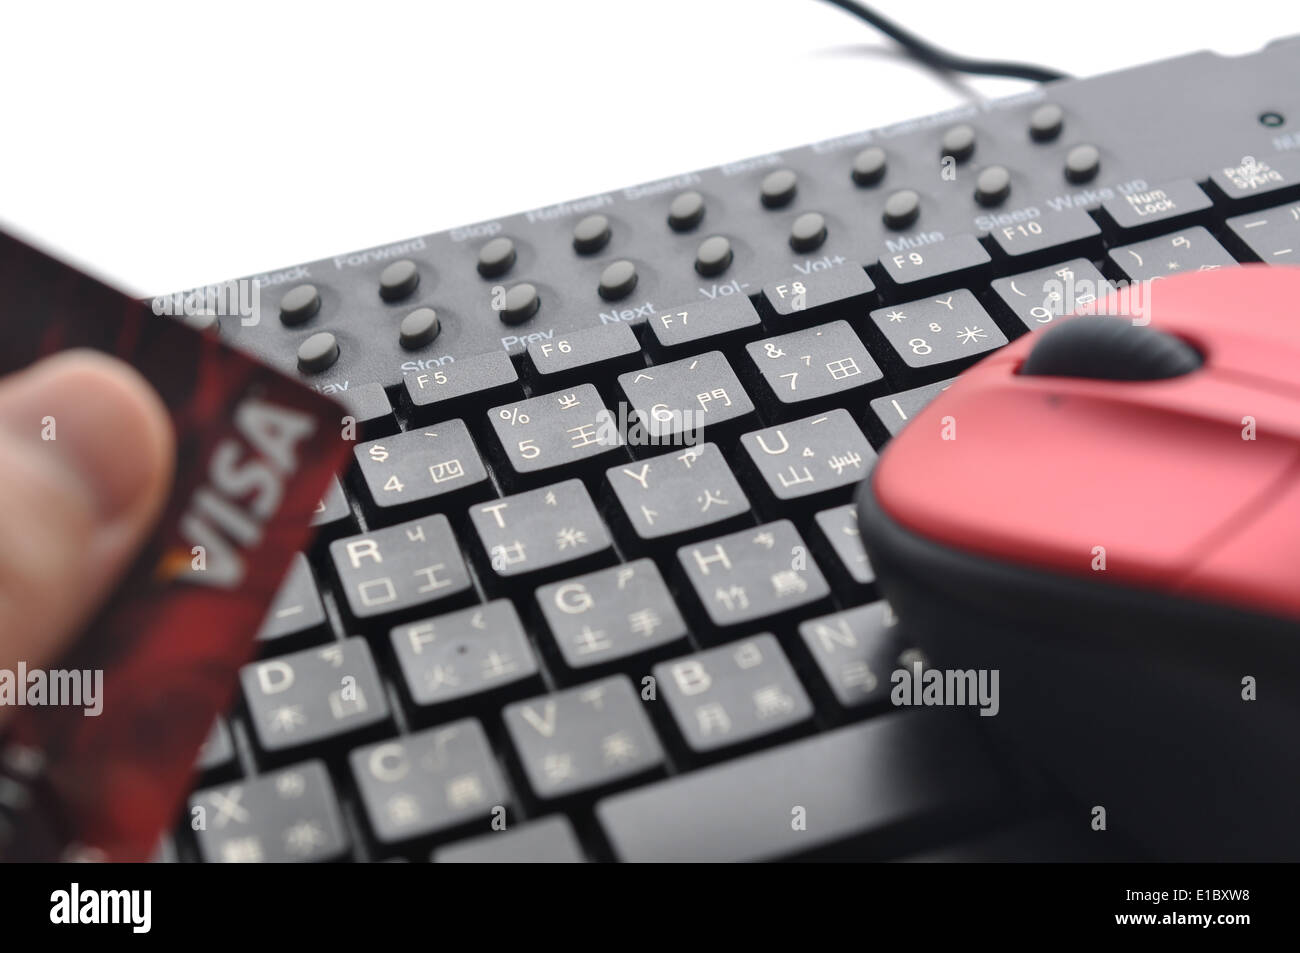 Digitare le informazioni della carta di credito sulla tastiera cinese ; concentrarsi sulla tastiera Foto Stock